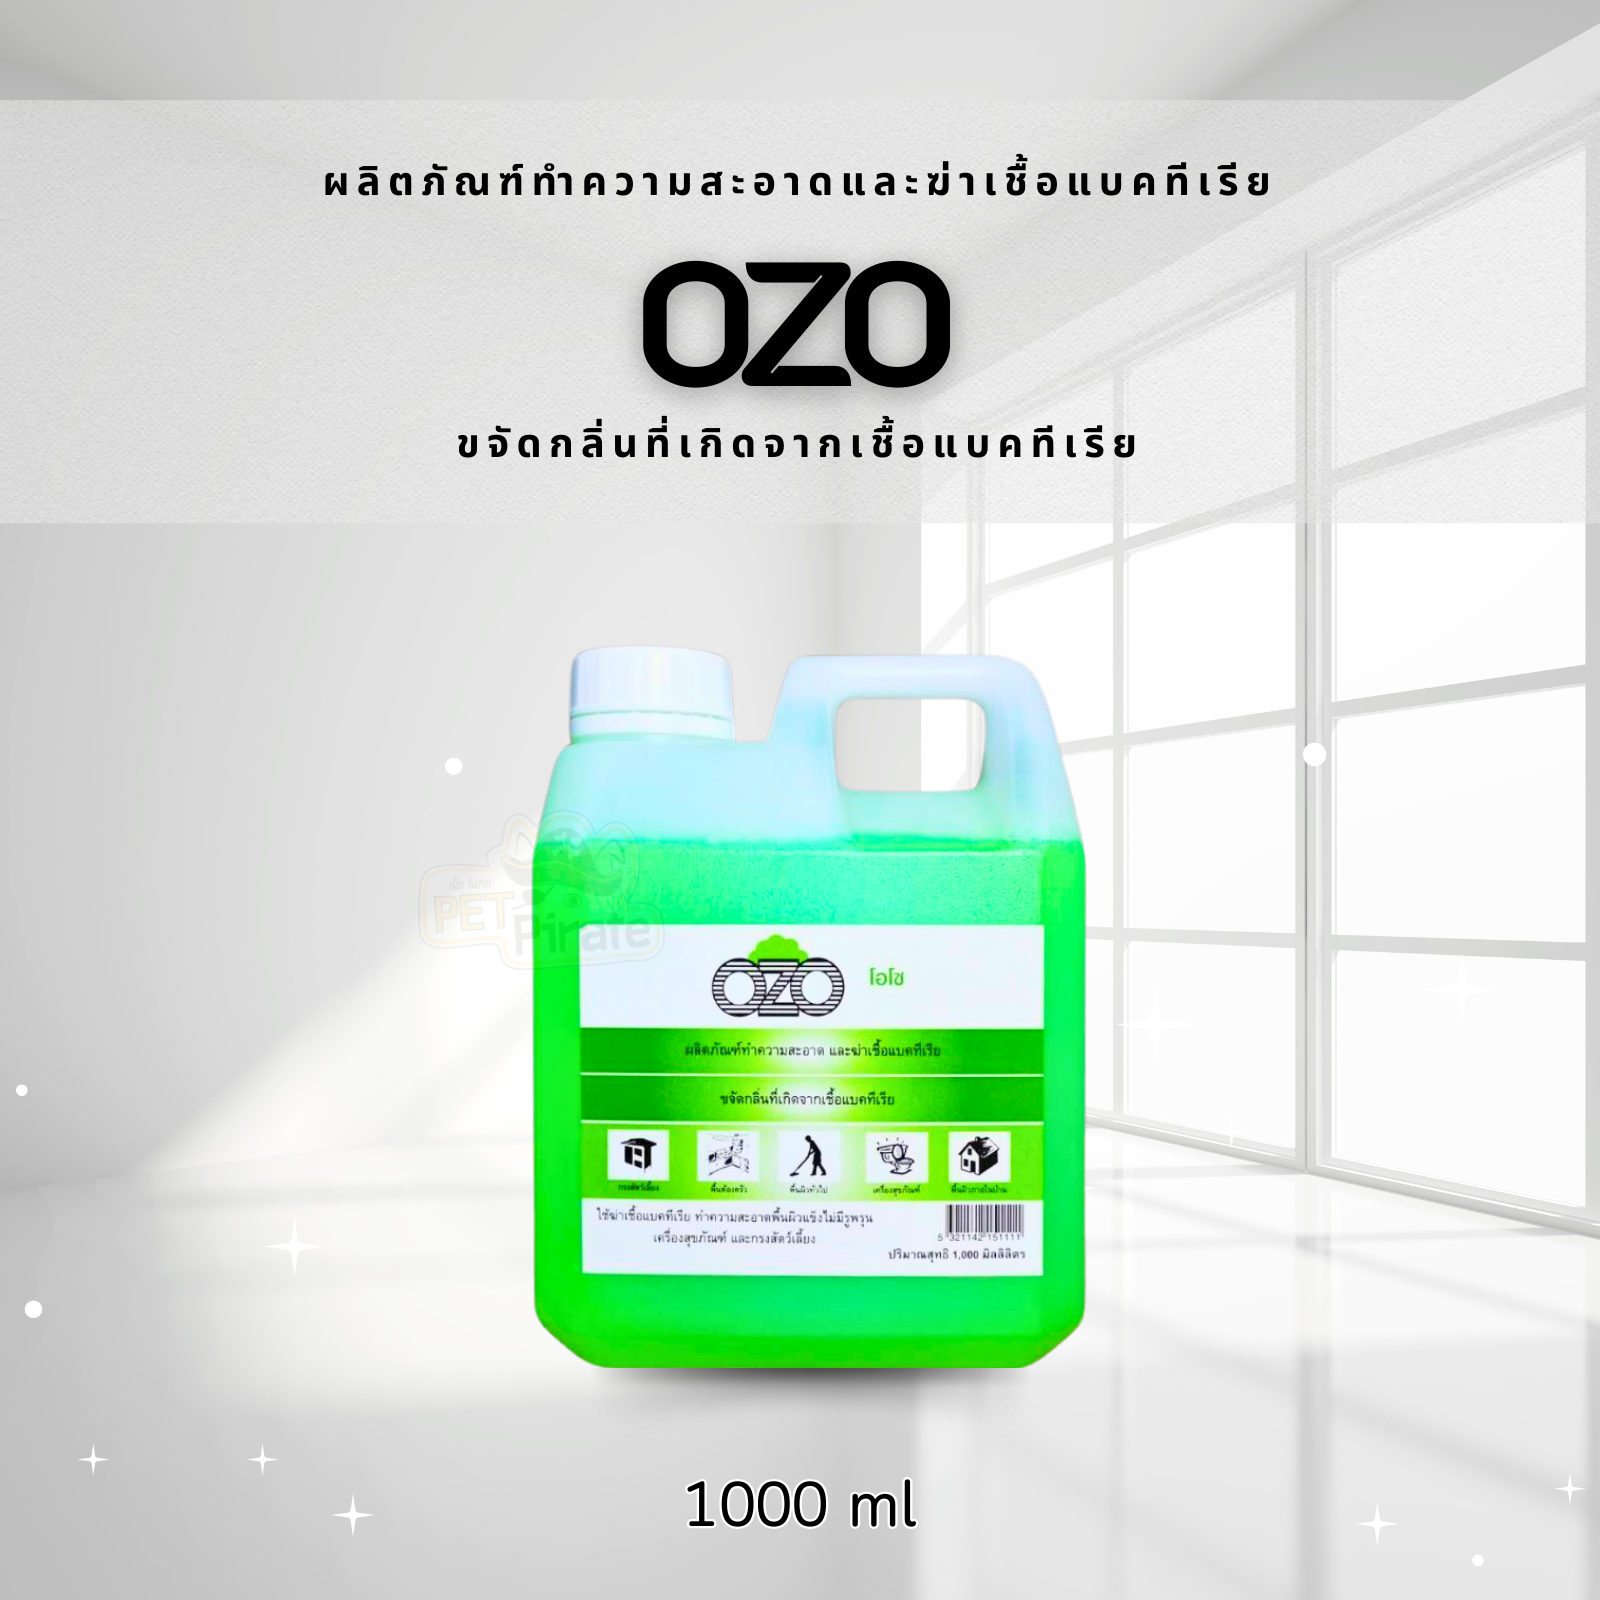 OZO โอโซ​ น้ำยาถูพื้น น้ำยาฆ่าเชื้อแบคทีเรีย น้ำยาดับกลิ่นฉี่ ทำความสะอาดพื้นผิวทั่วไป​ น้ำยาล้างกรงสัตว์